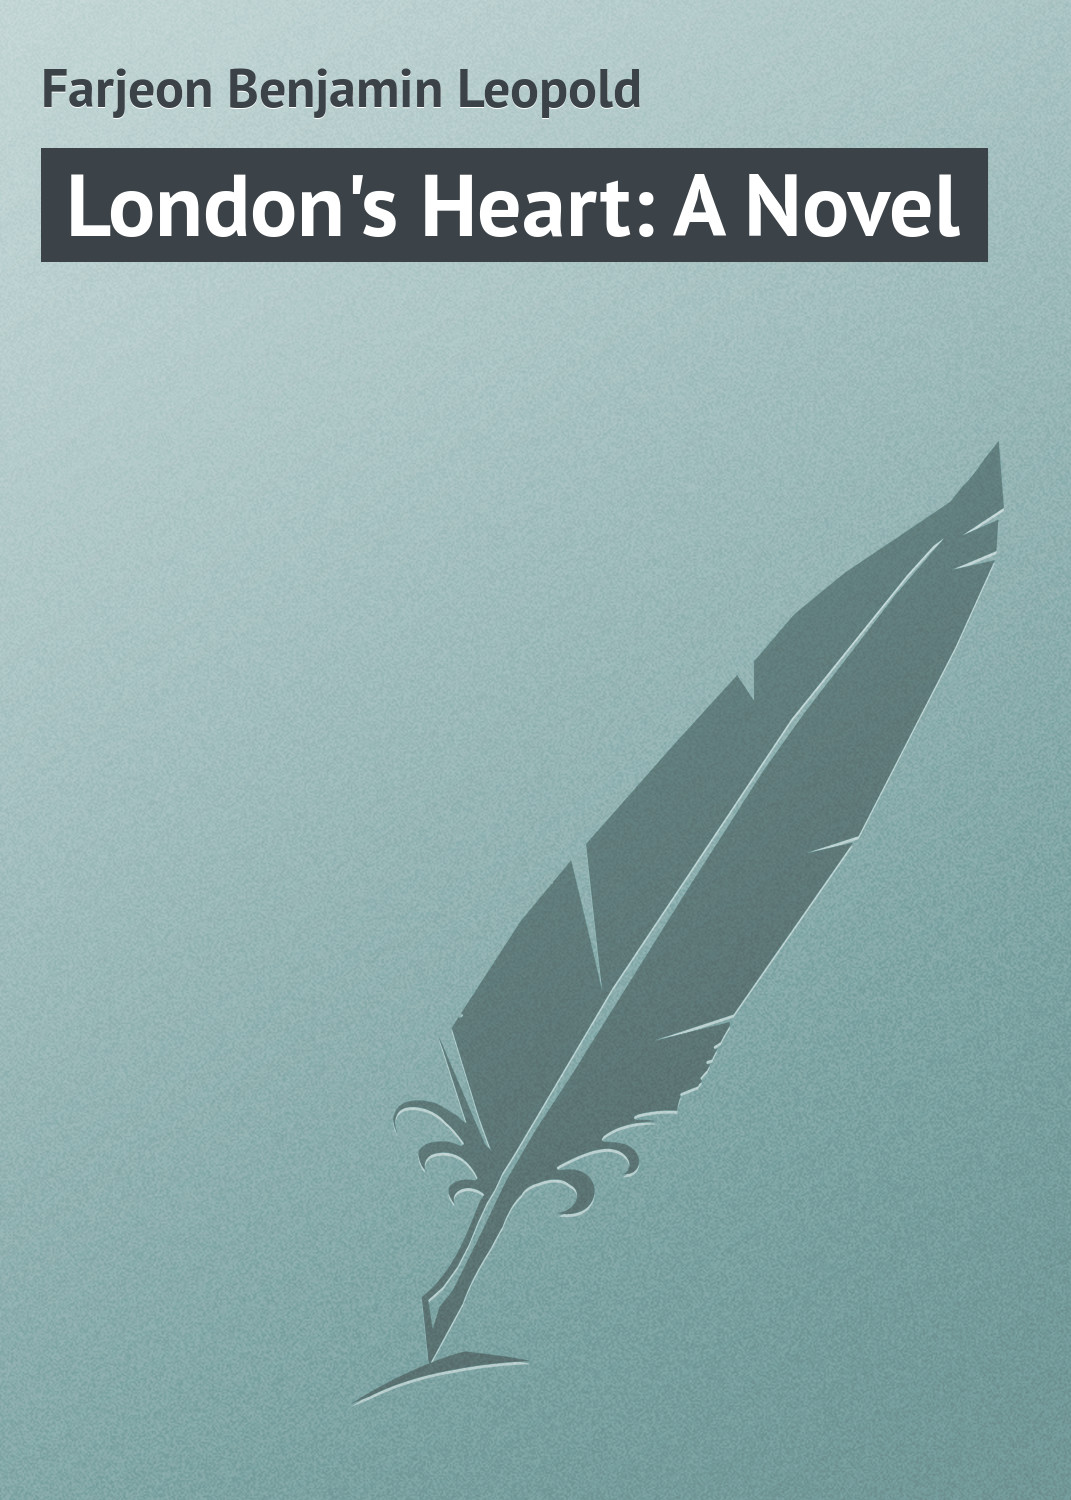 Книга London's Heart: A Novel из серии , созданная Benjamin Farjeon, может относится к жанру Зарубежная классика. Стоимость электронной книги London's Heart: A Novel с идентификатором 23163651 составляет 5.99 руб.